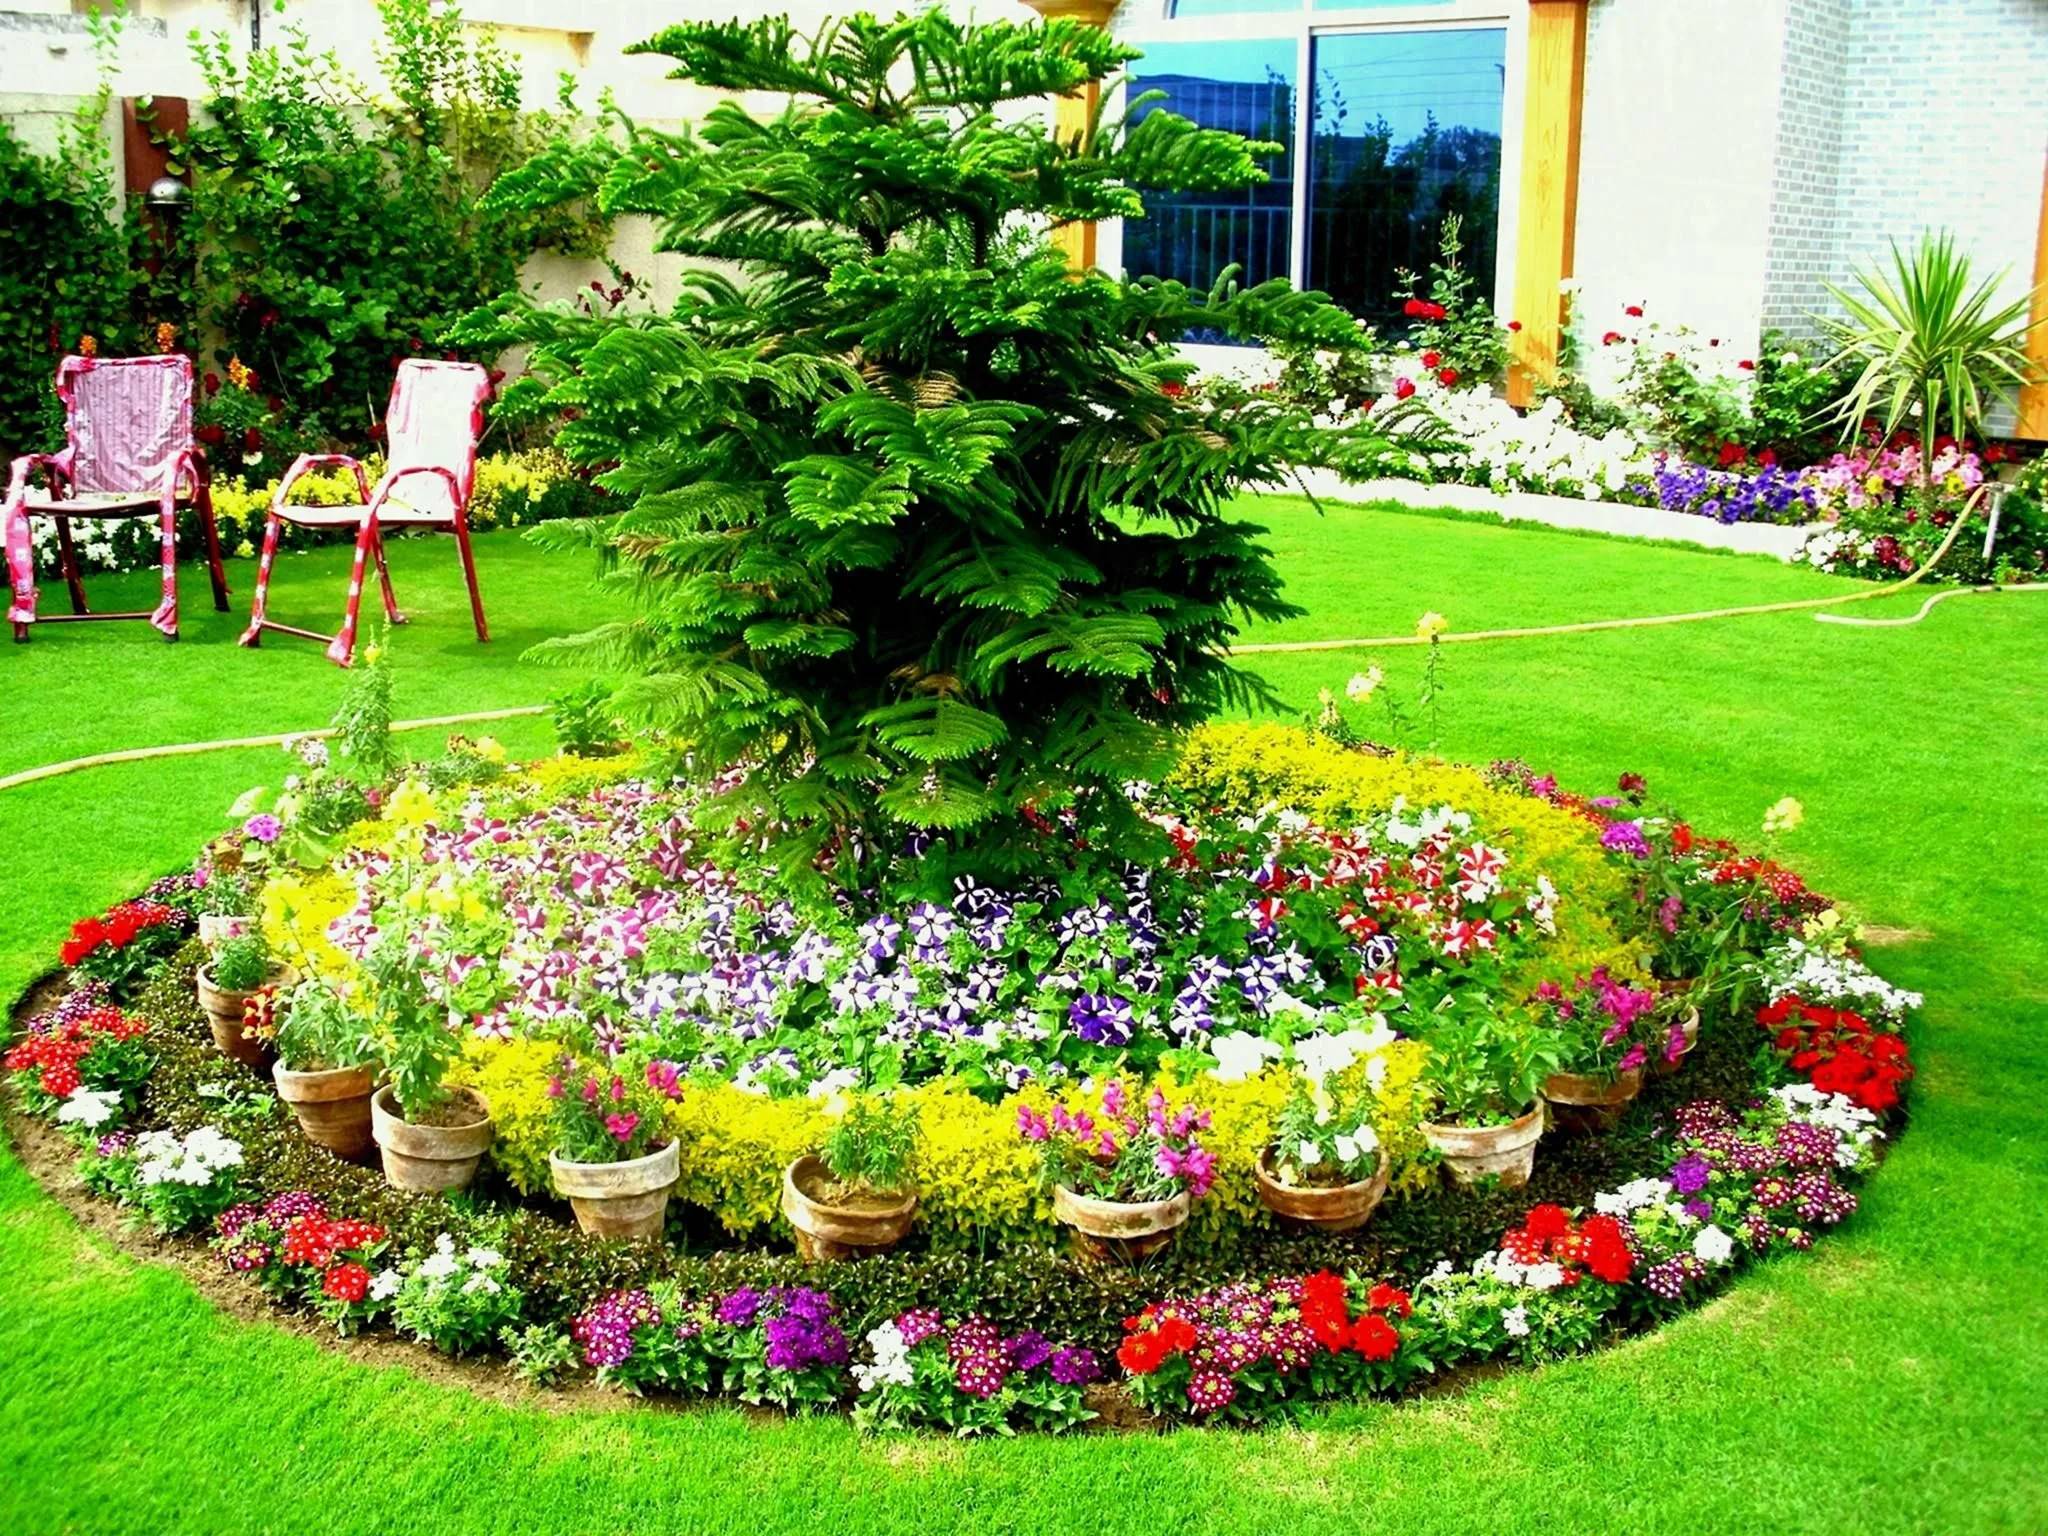 Ландшафтный дизайн дачного участка - 100 красивых идей для дачи и сада (фото)